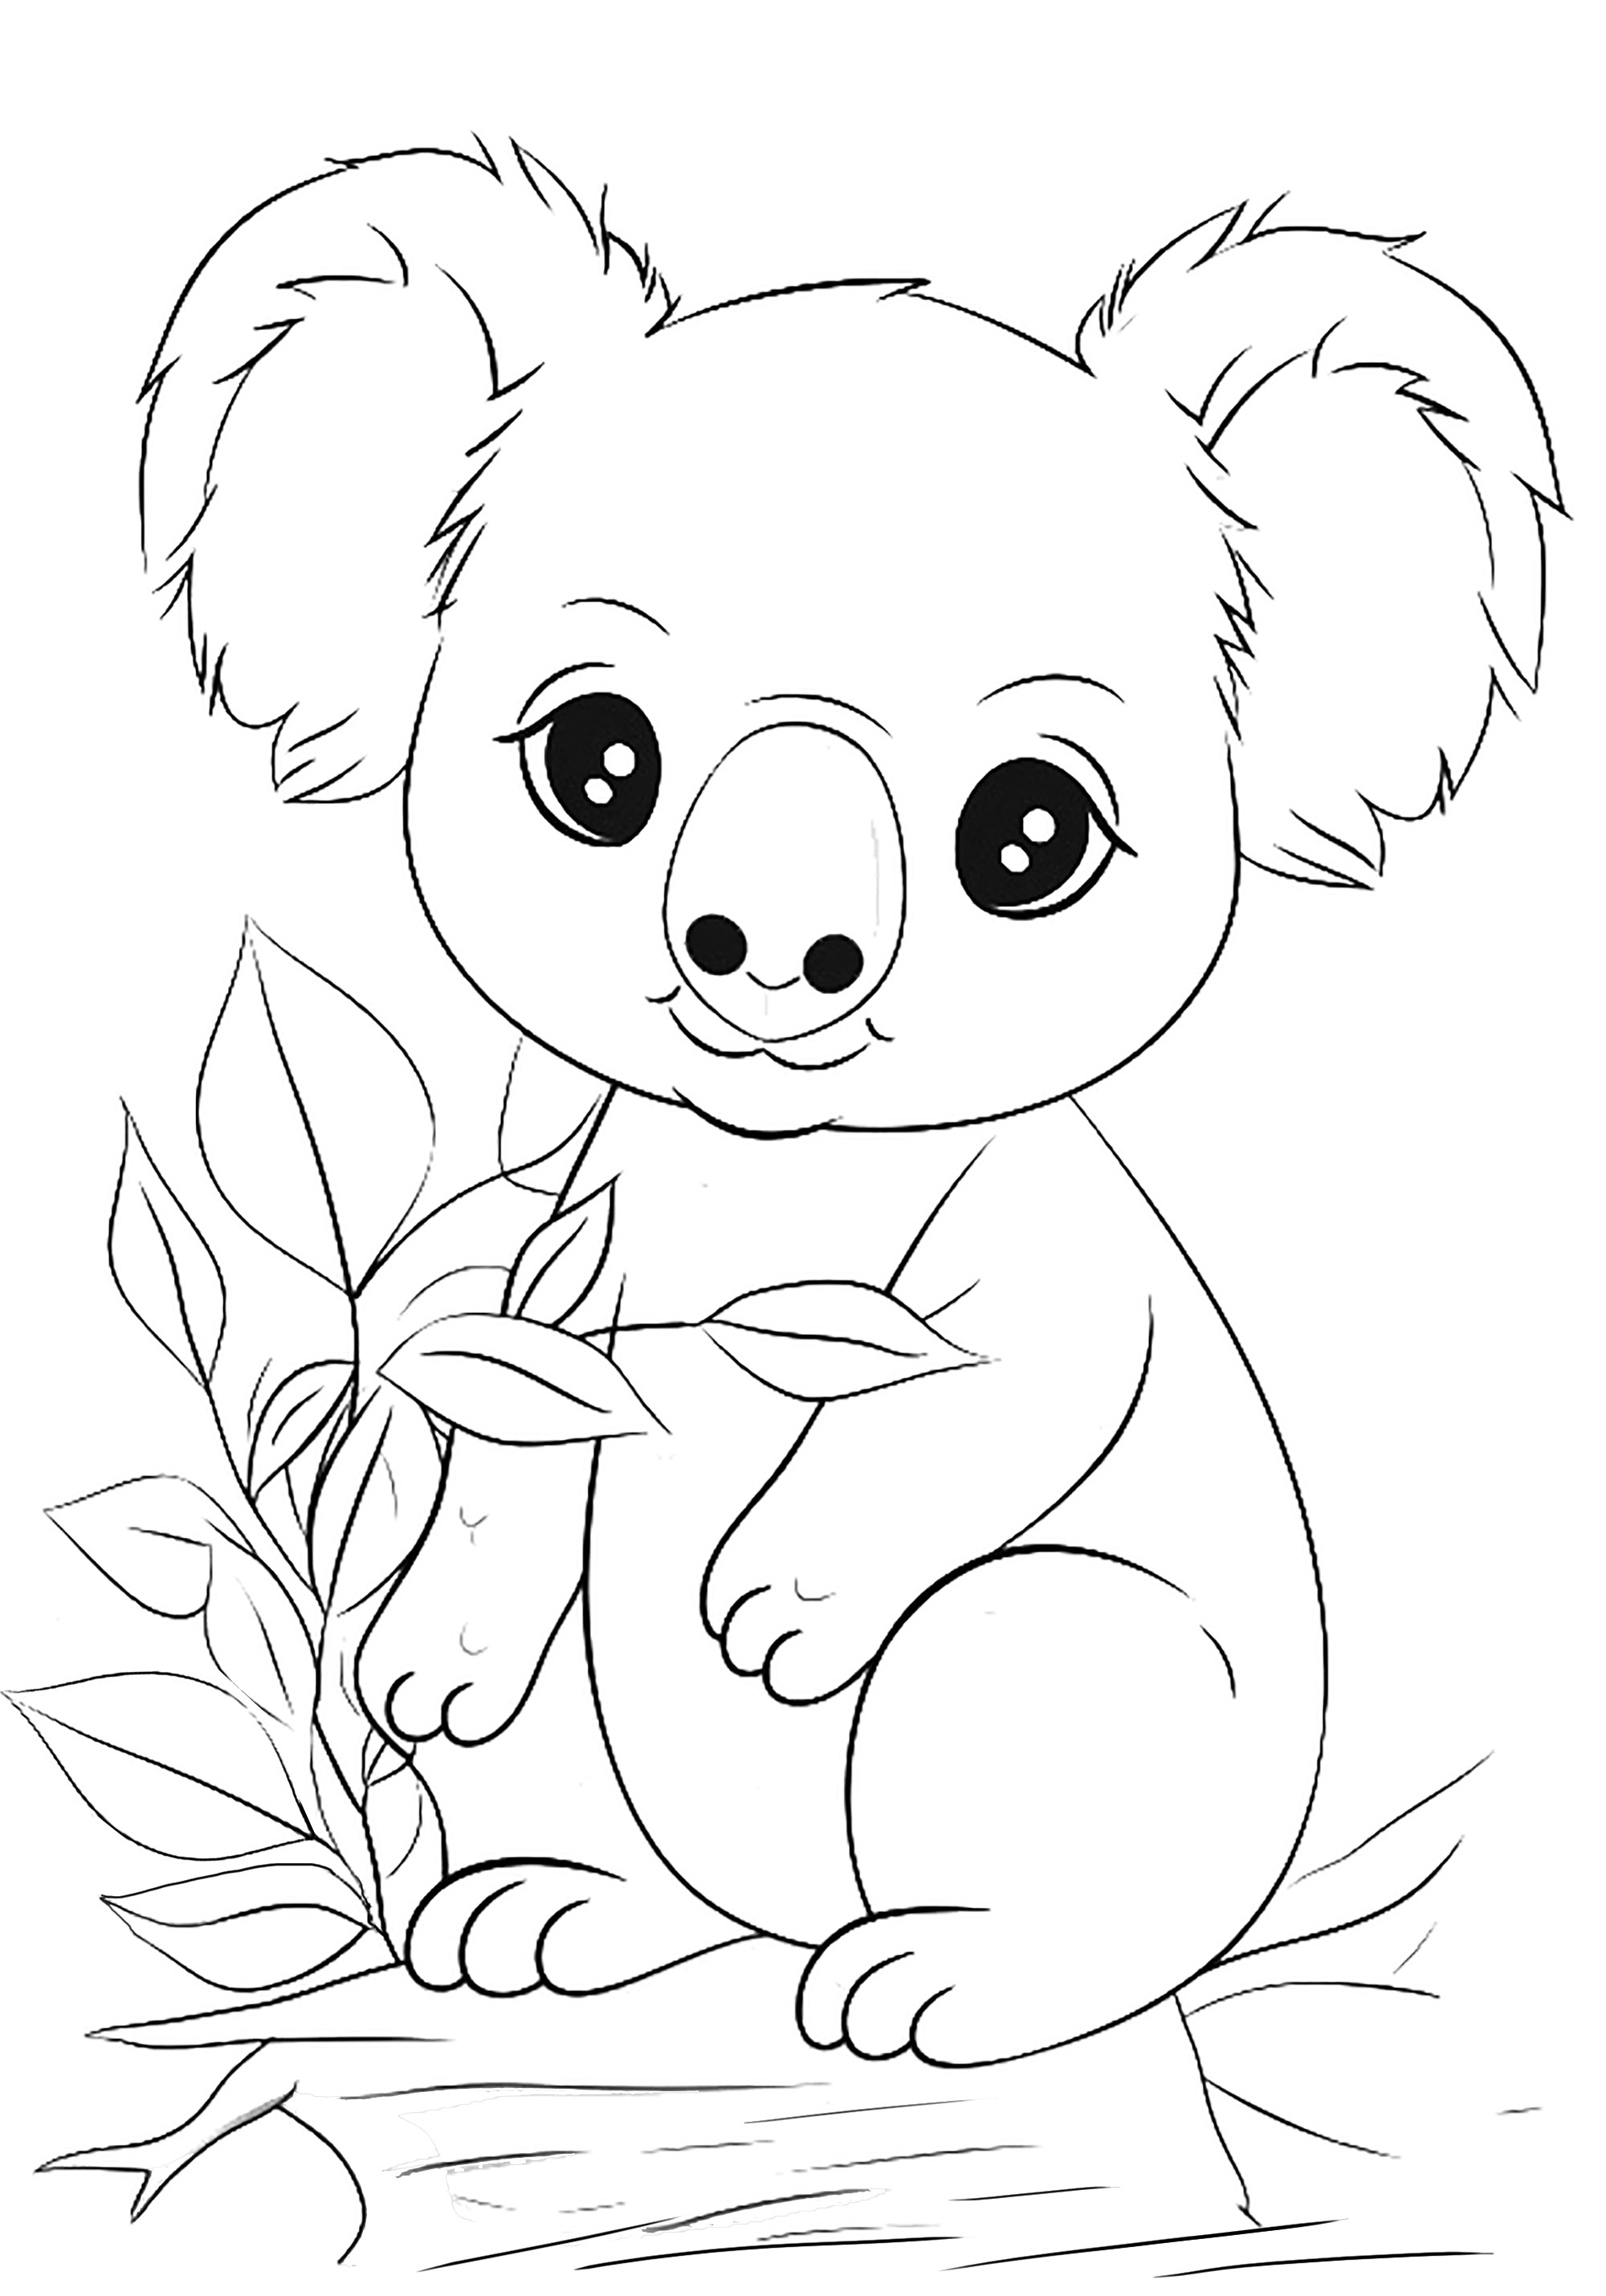 Coloriage de Koala avec feuilles de bambou